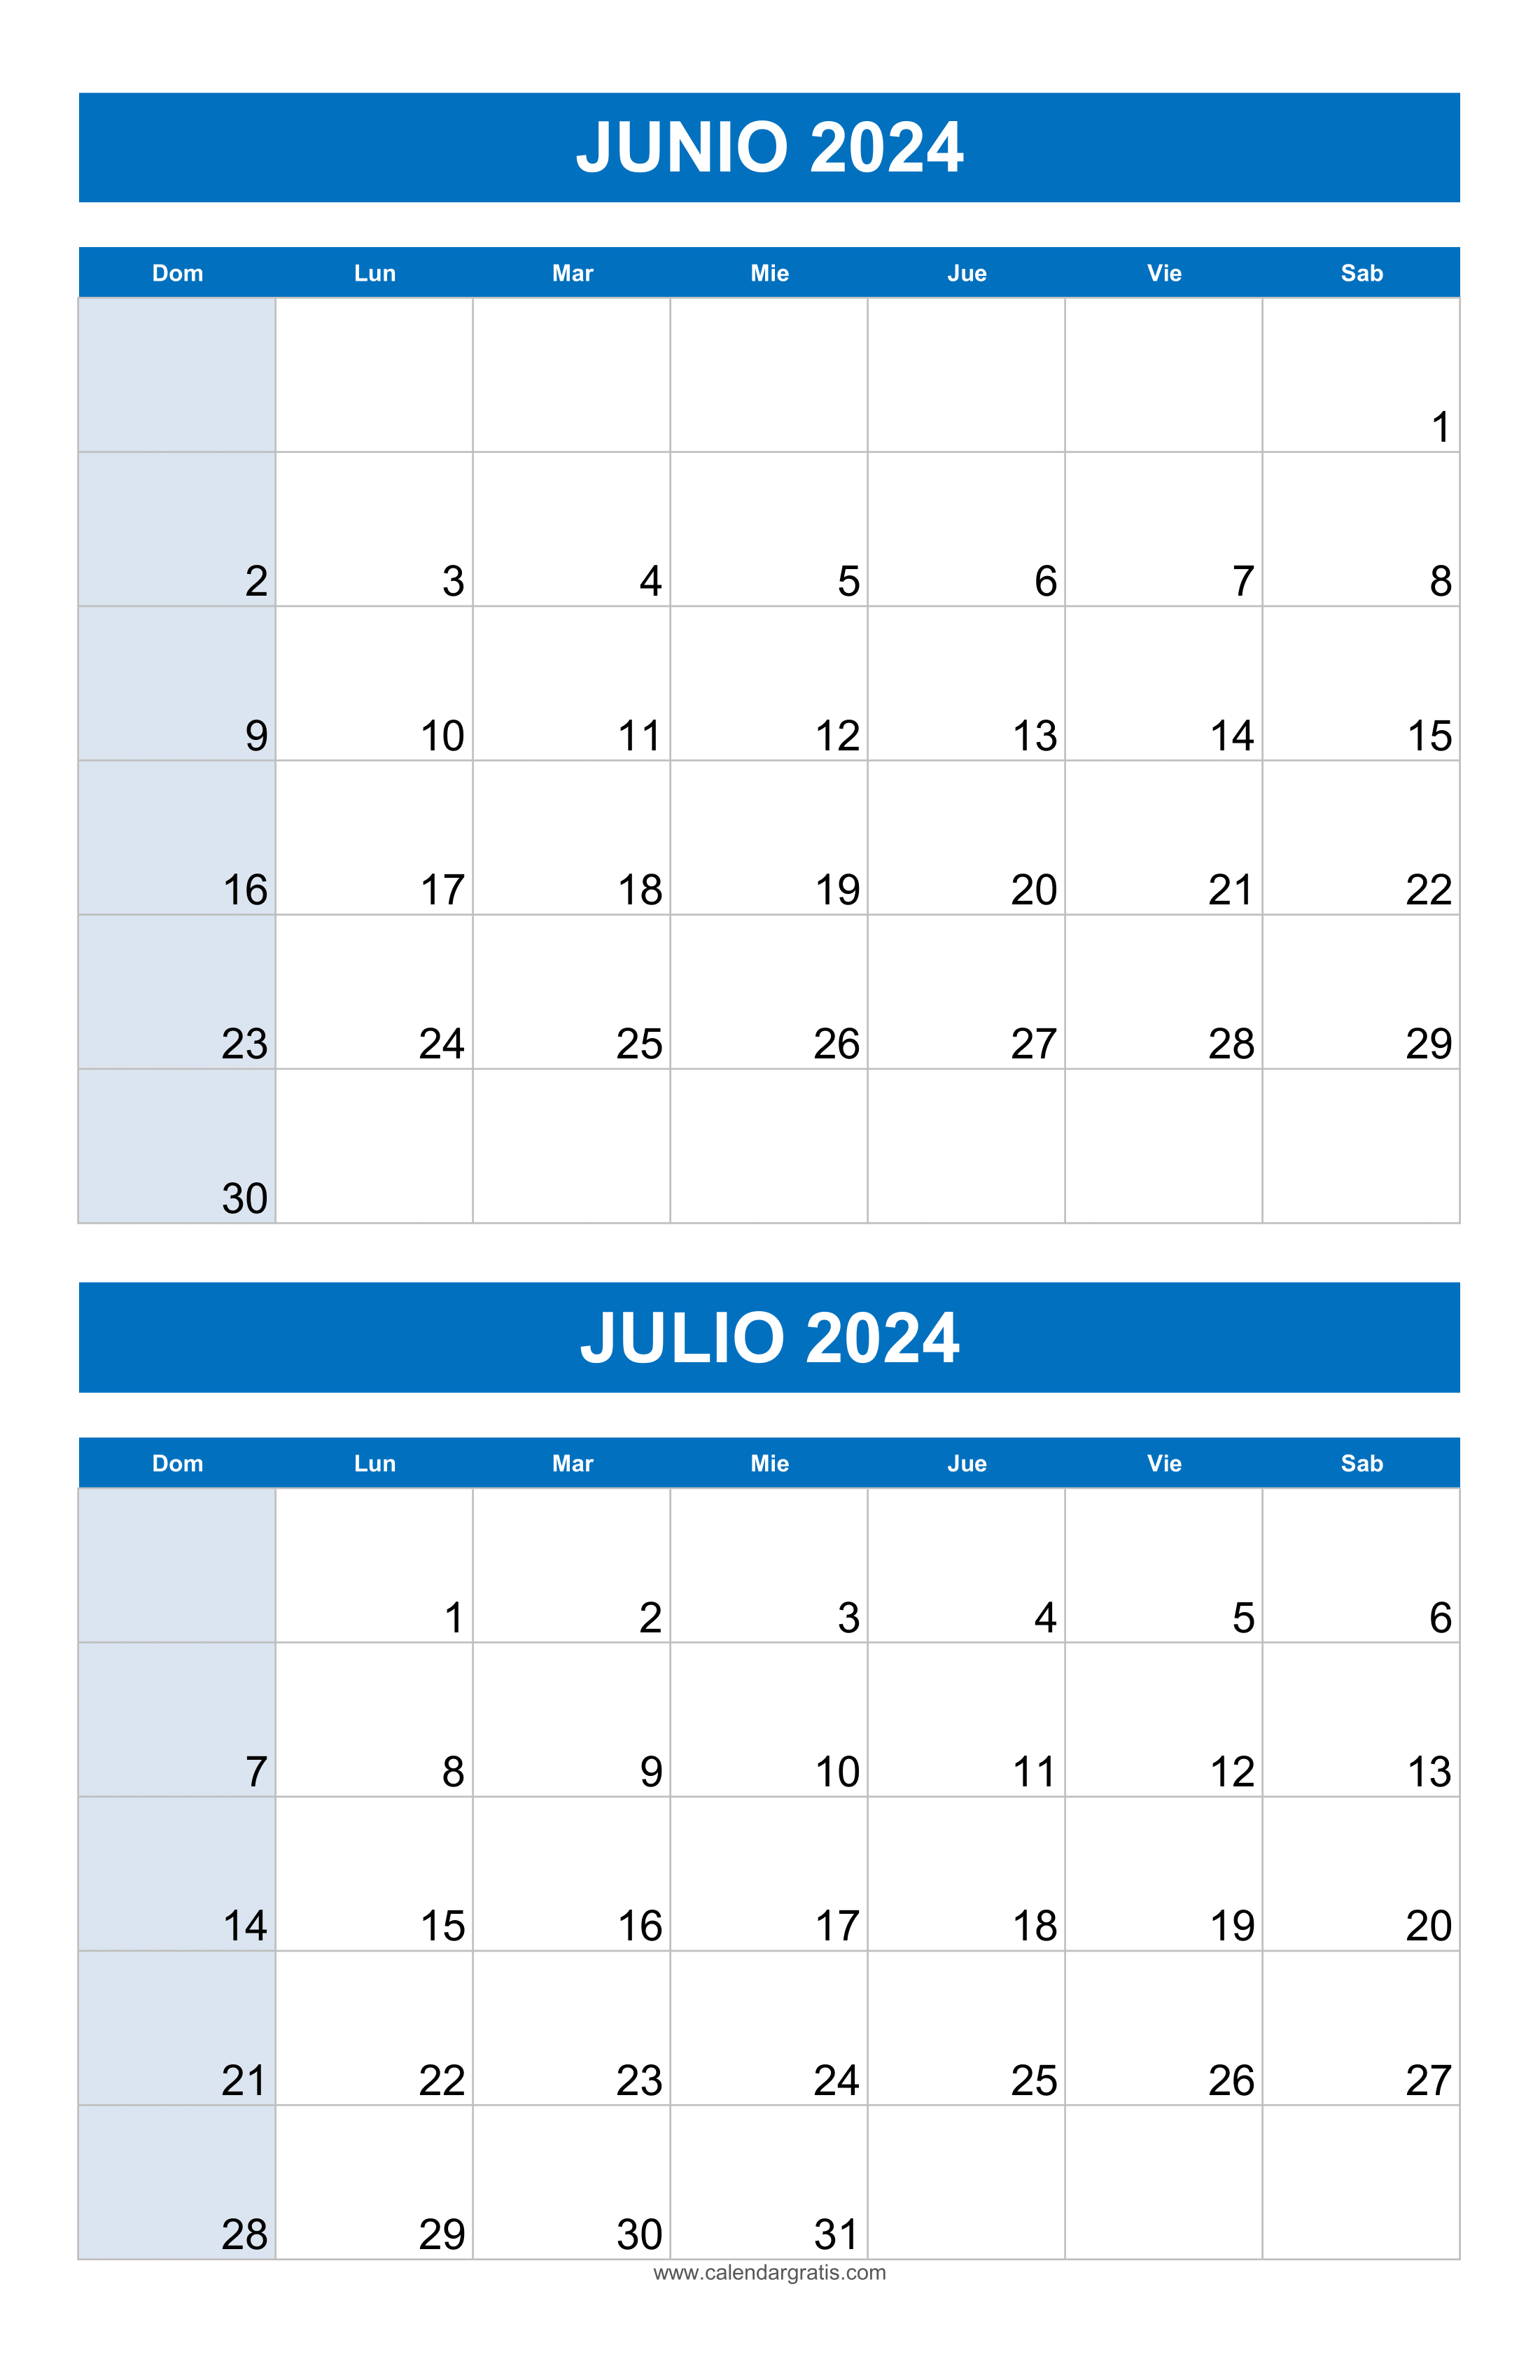 Calendario Junio y Julio 2024 Para Imprimir